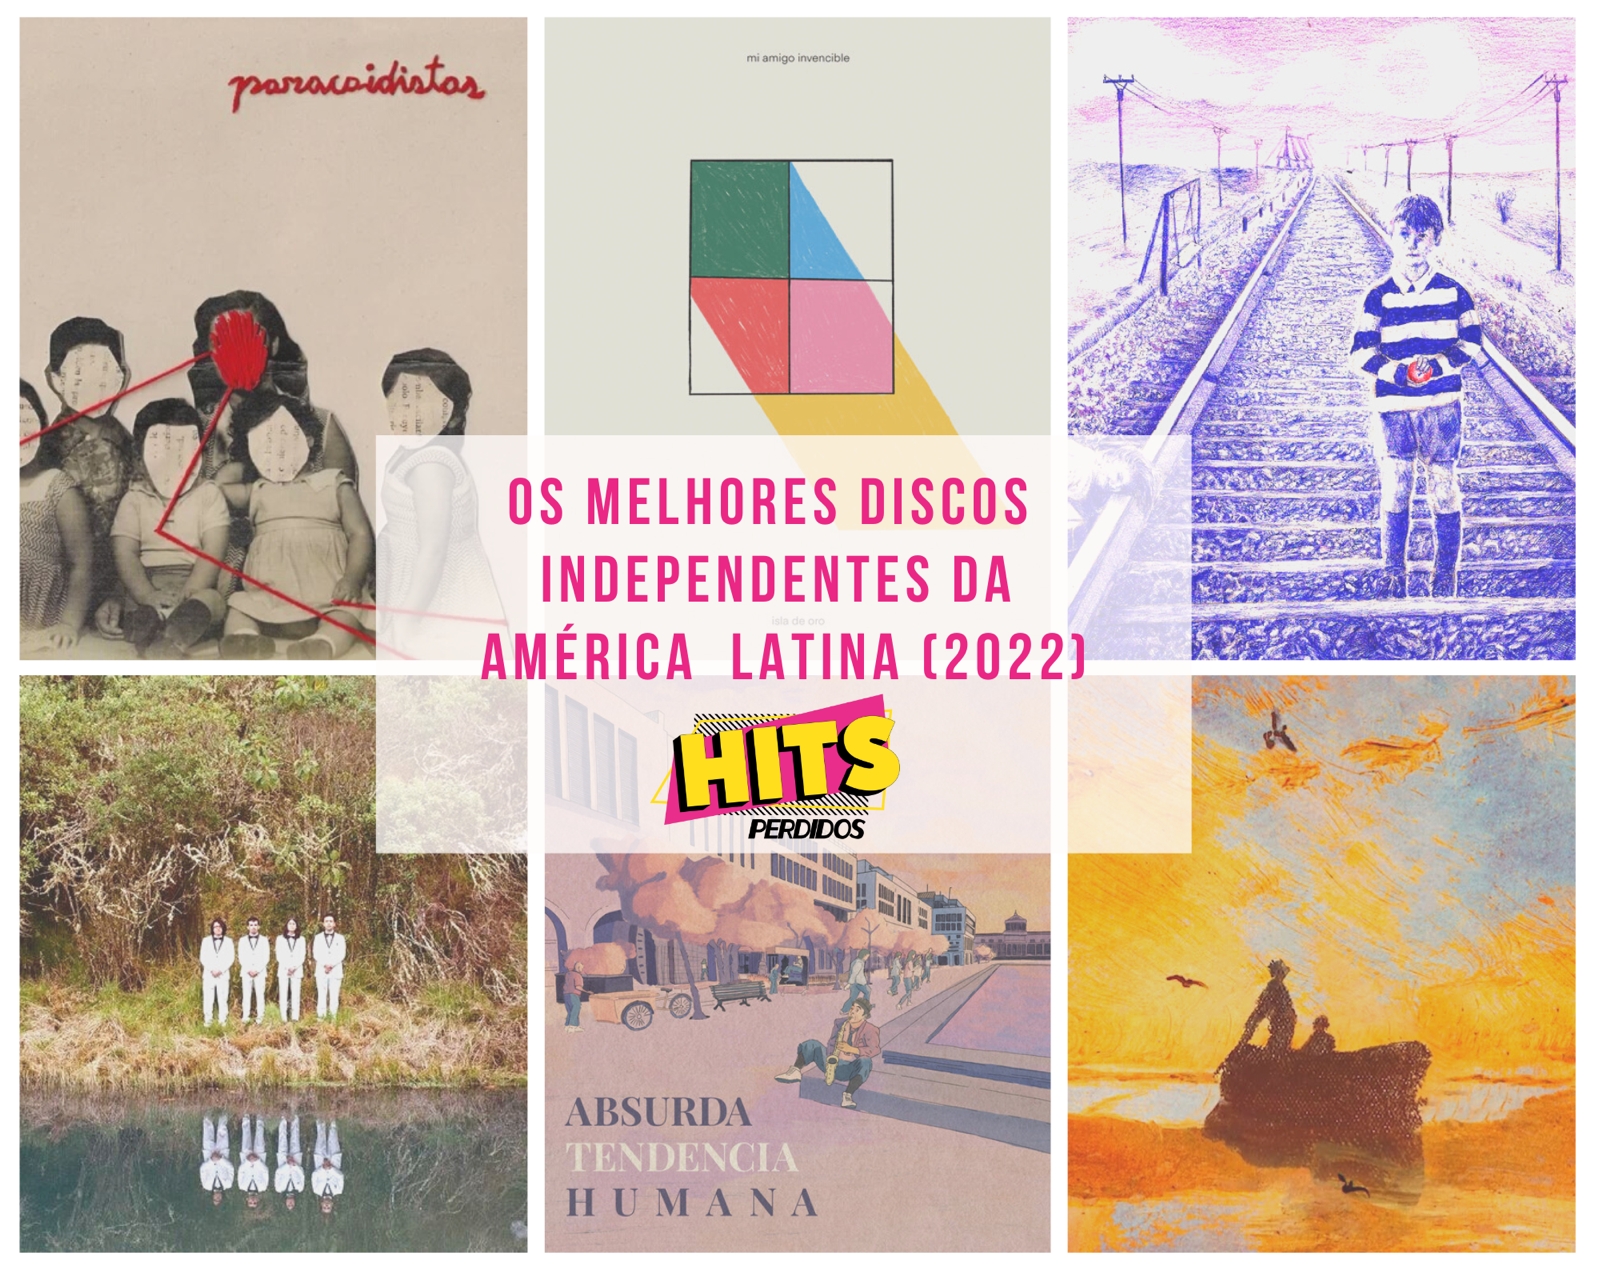 Melhores Discos Independentes da América Latina (2022)